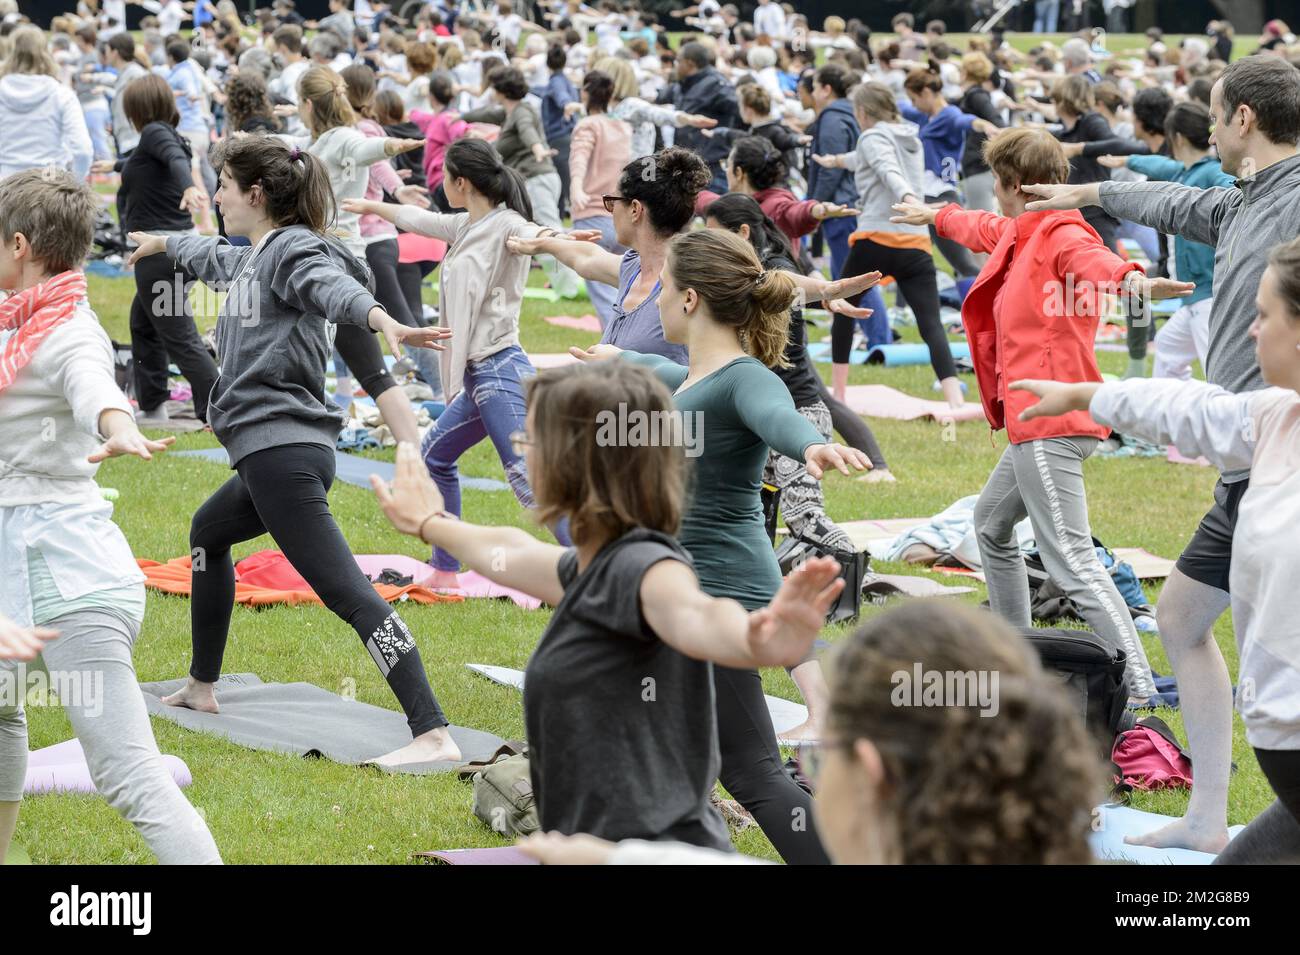 5th yogaday in Brussels | Cinquieme yoga day au bois de la Cambre a Bruxelles. Plusieurs centaines d'amateurs et debutants pratriquent ensemble differentes postures de yoga. 24/06/2018 Stock Photo